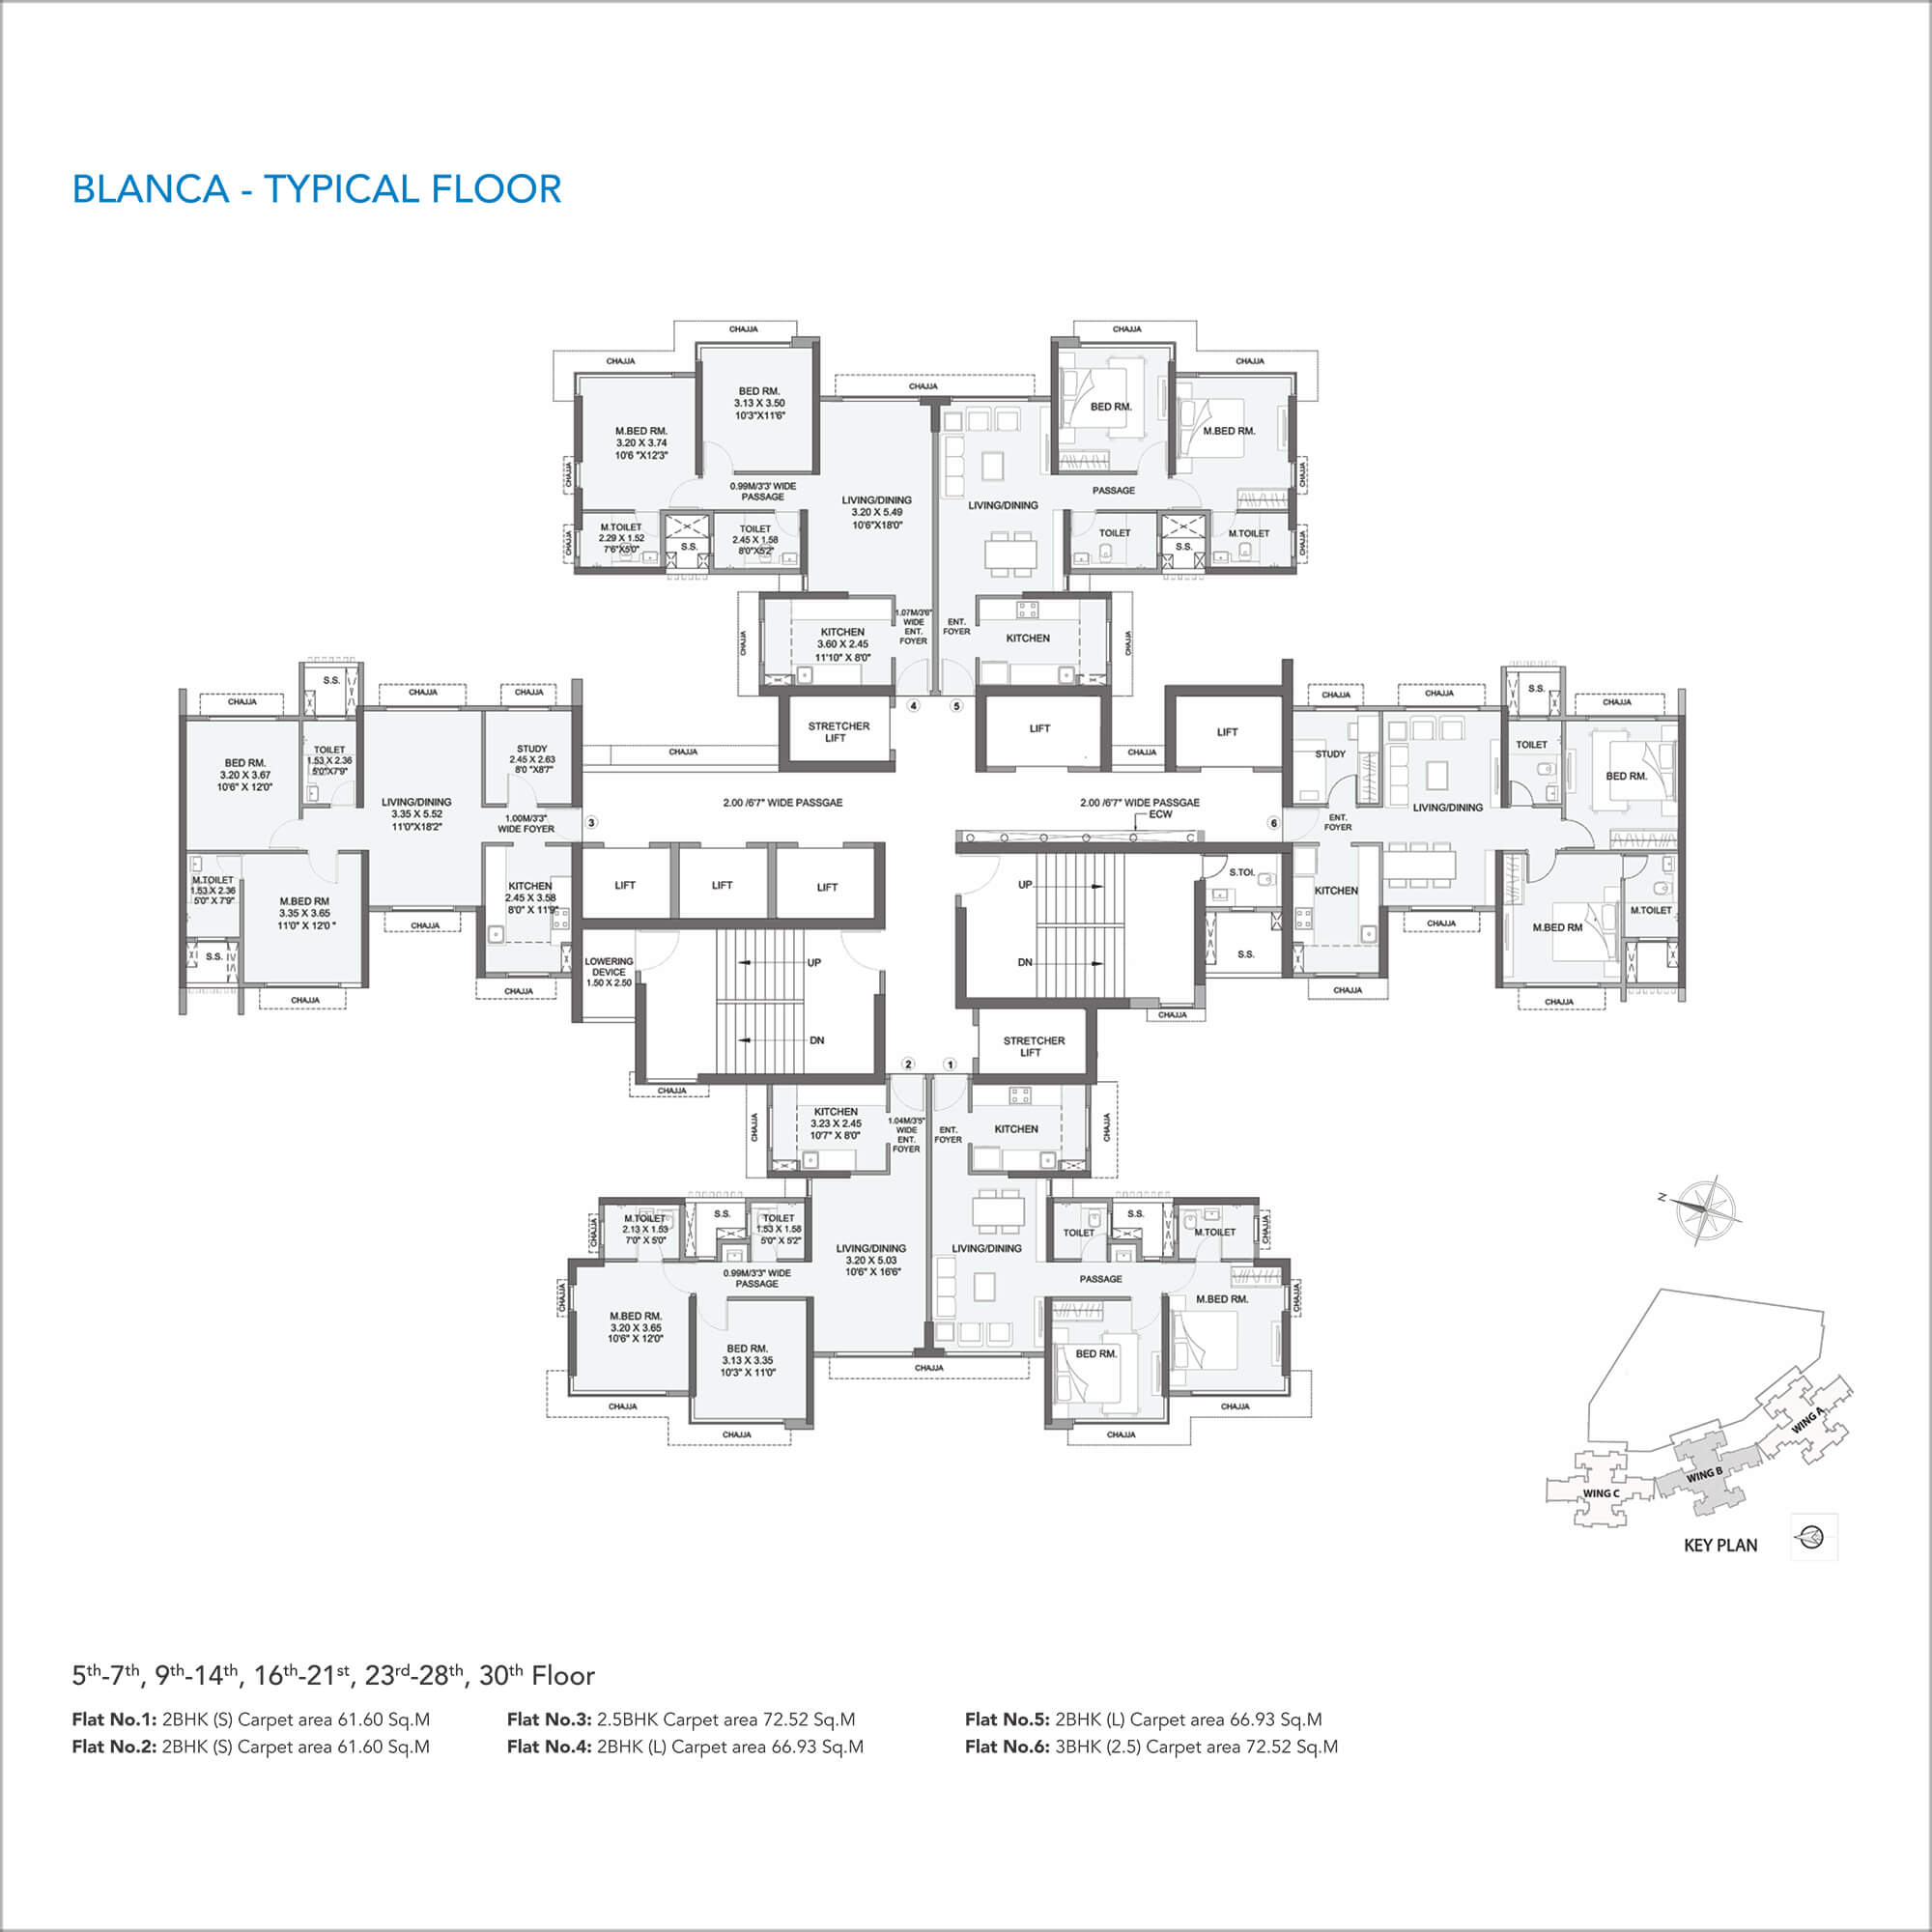 blanca - Floor Plan 1